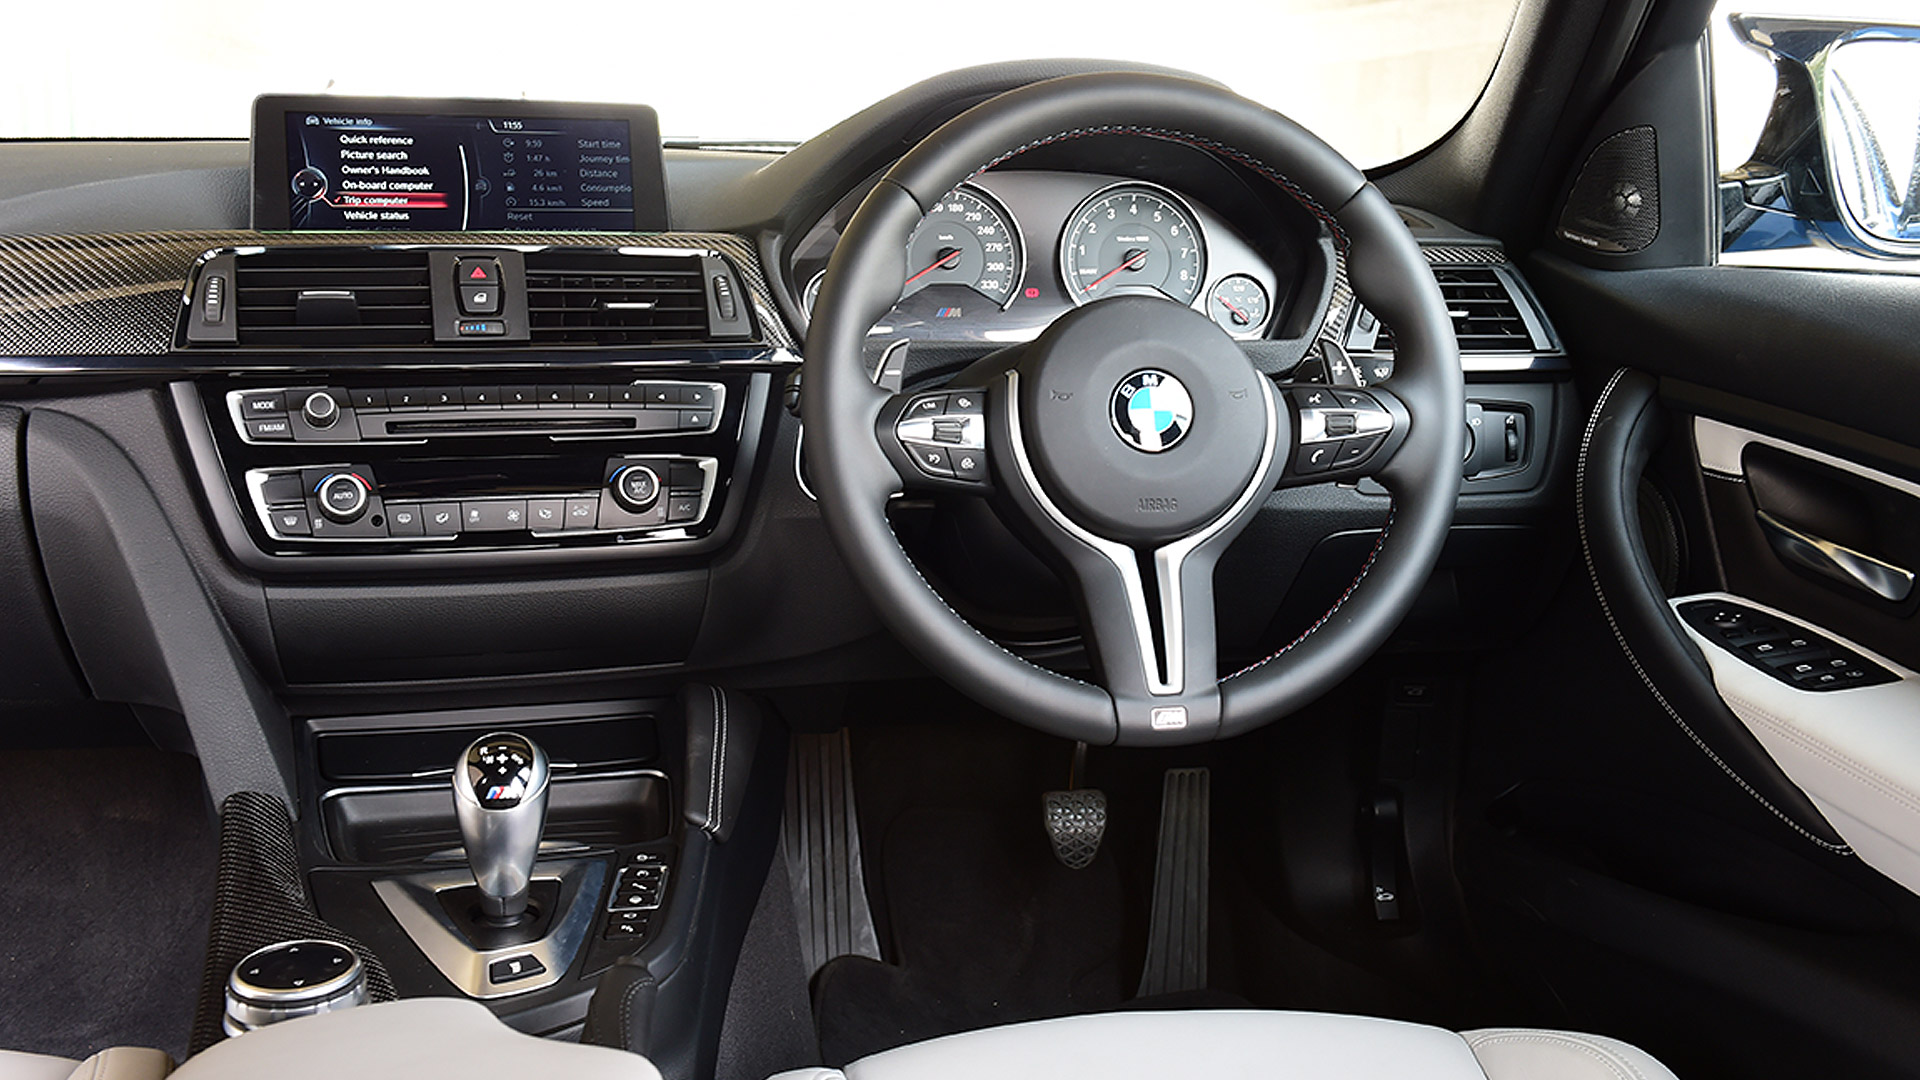 BMW M3 Sedan 2015 STD Compare